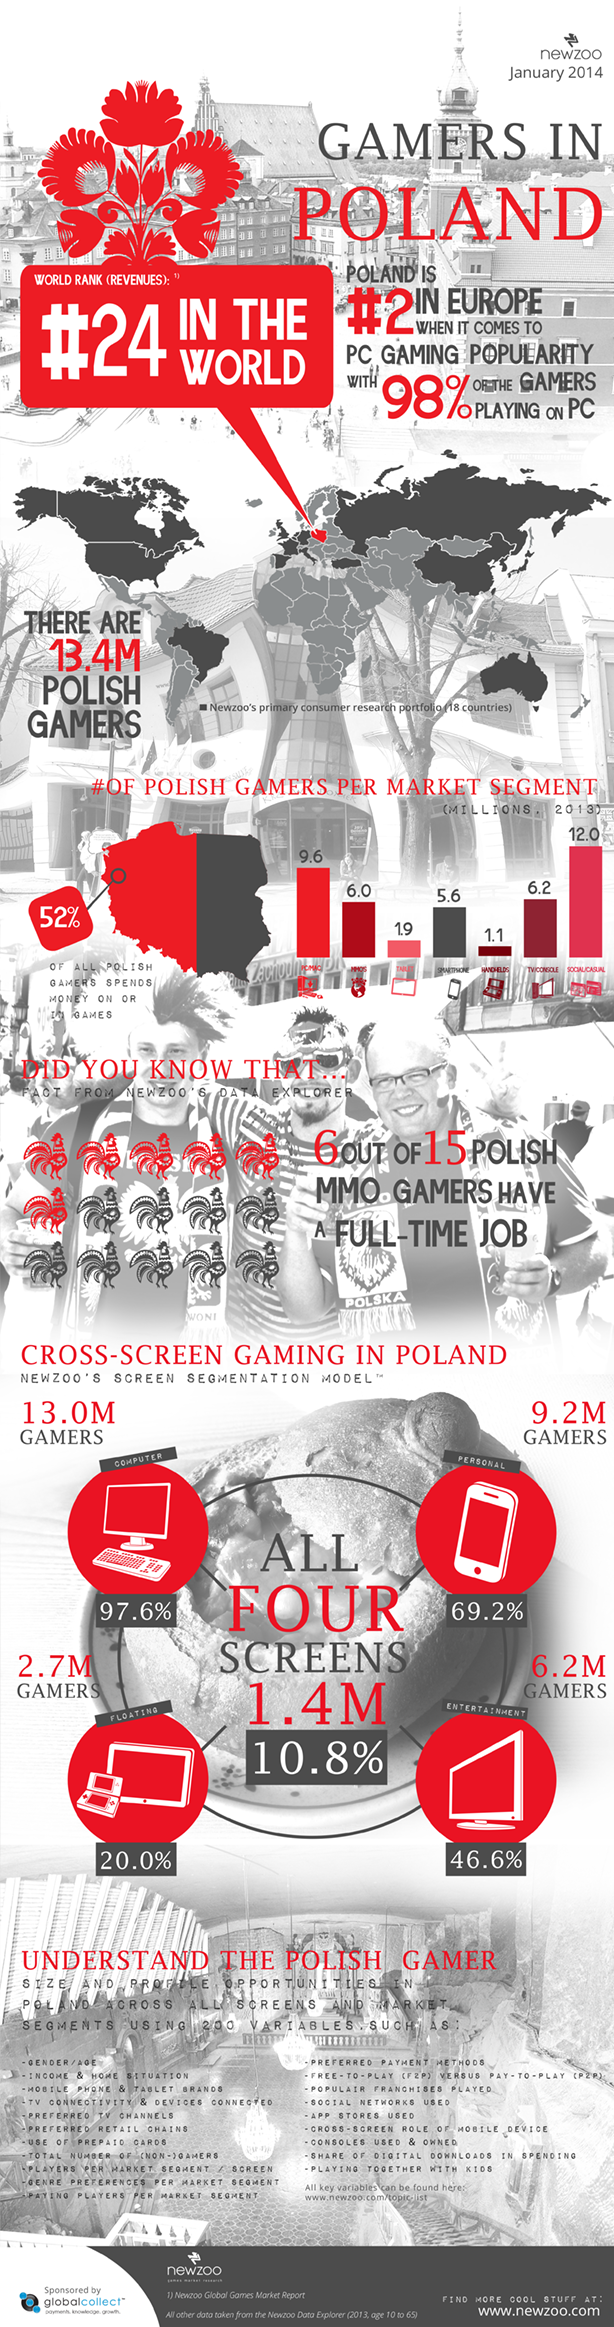 W Polsce gra 13,4 miliona osób